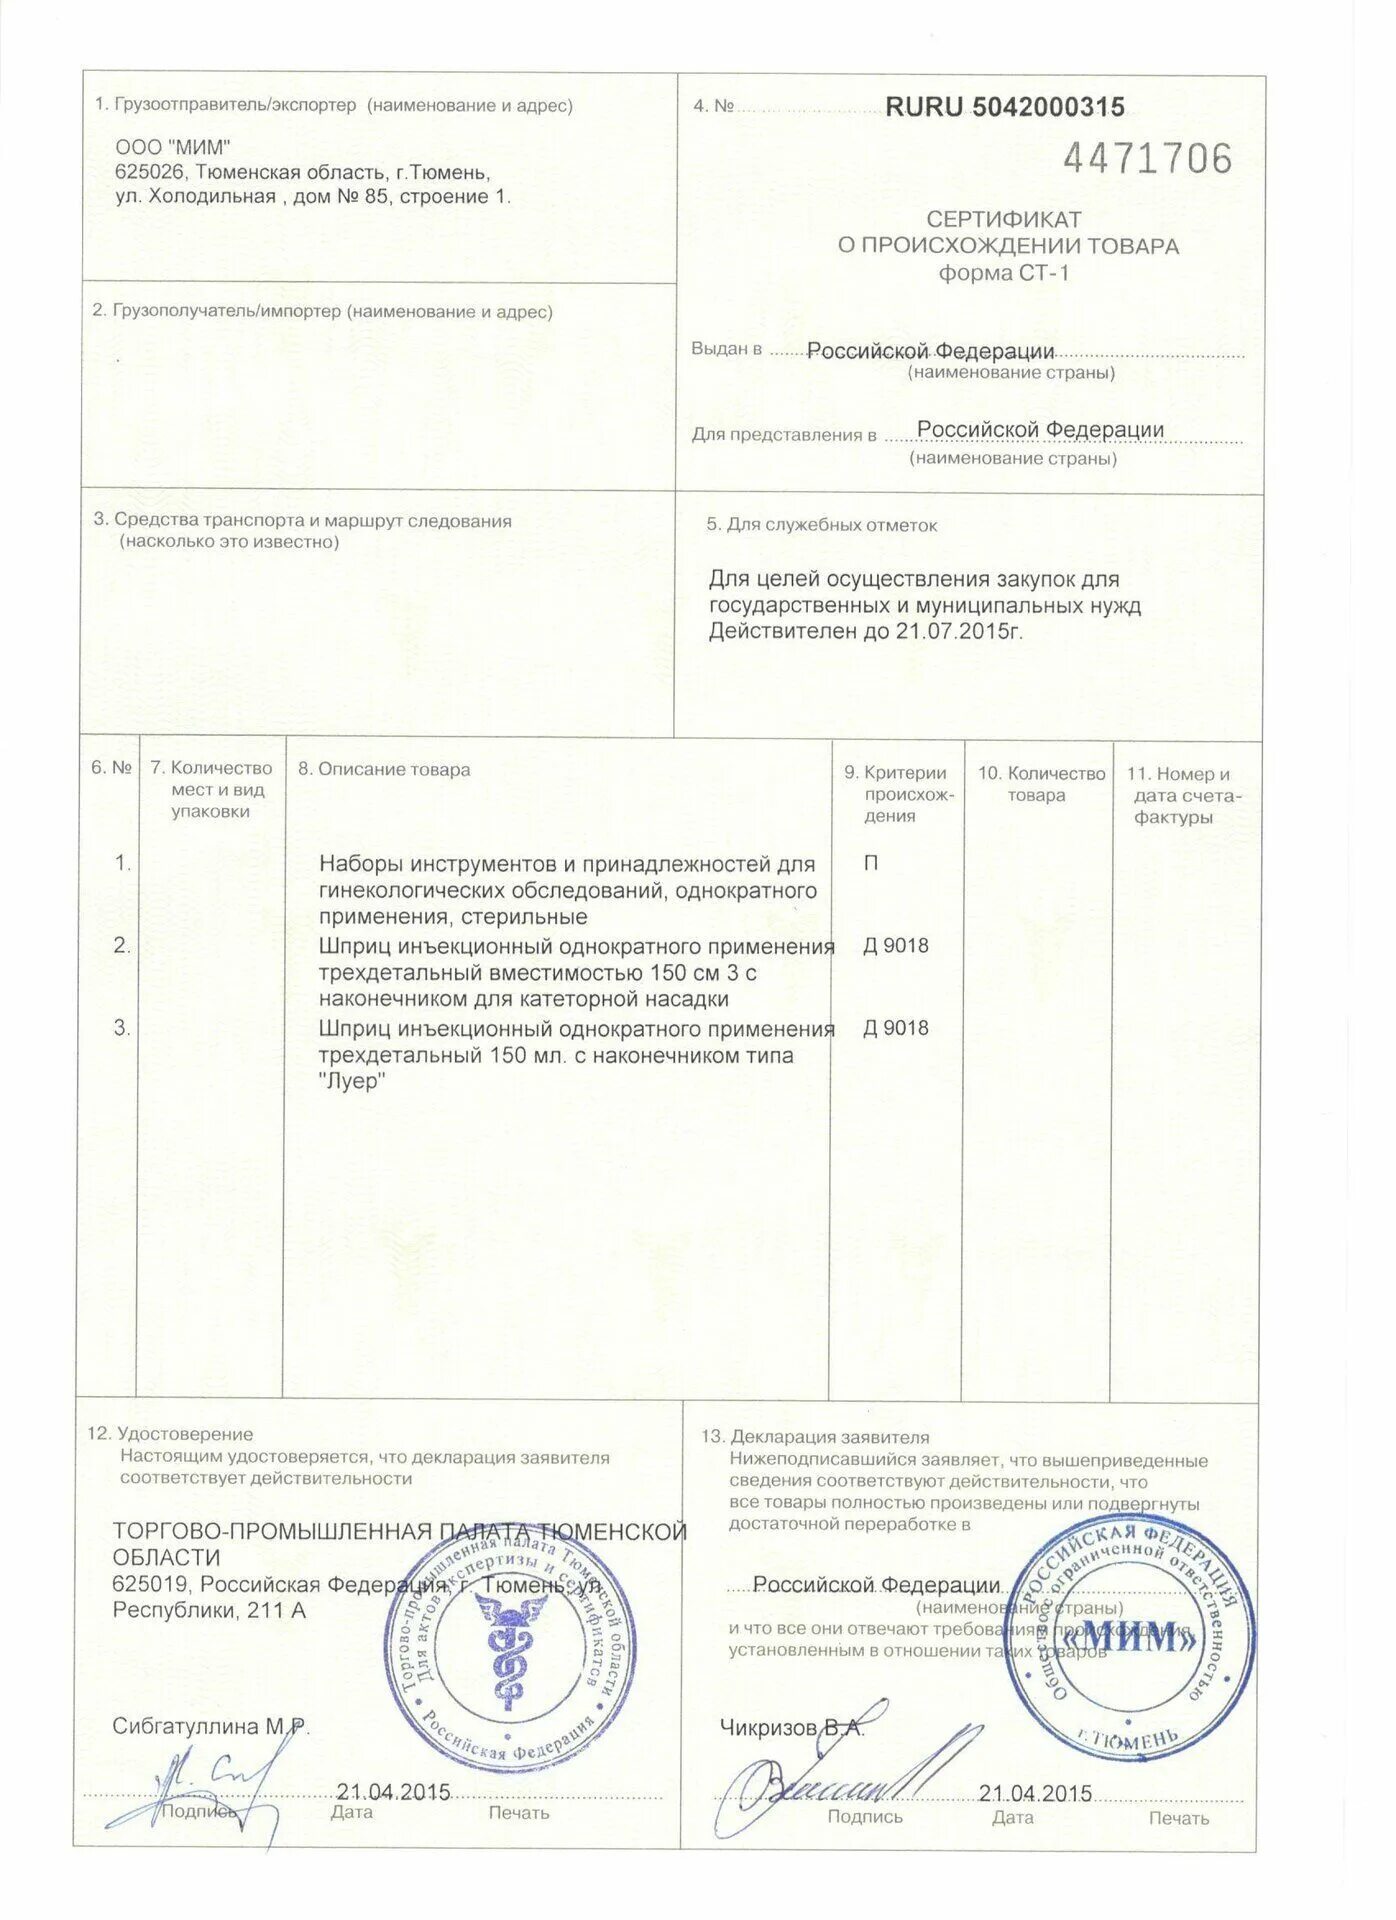 Сам ст 1. Форма ст-1 сертификата о происхождении. Сертификат ст 1 для цемента. Сертификат российского производителя ст-1. Сертификат торгово-промышленной палаты формы ст-1.